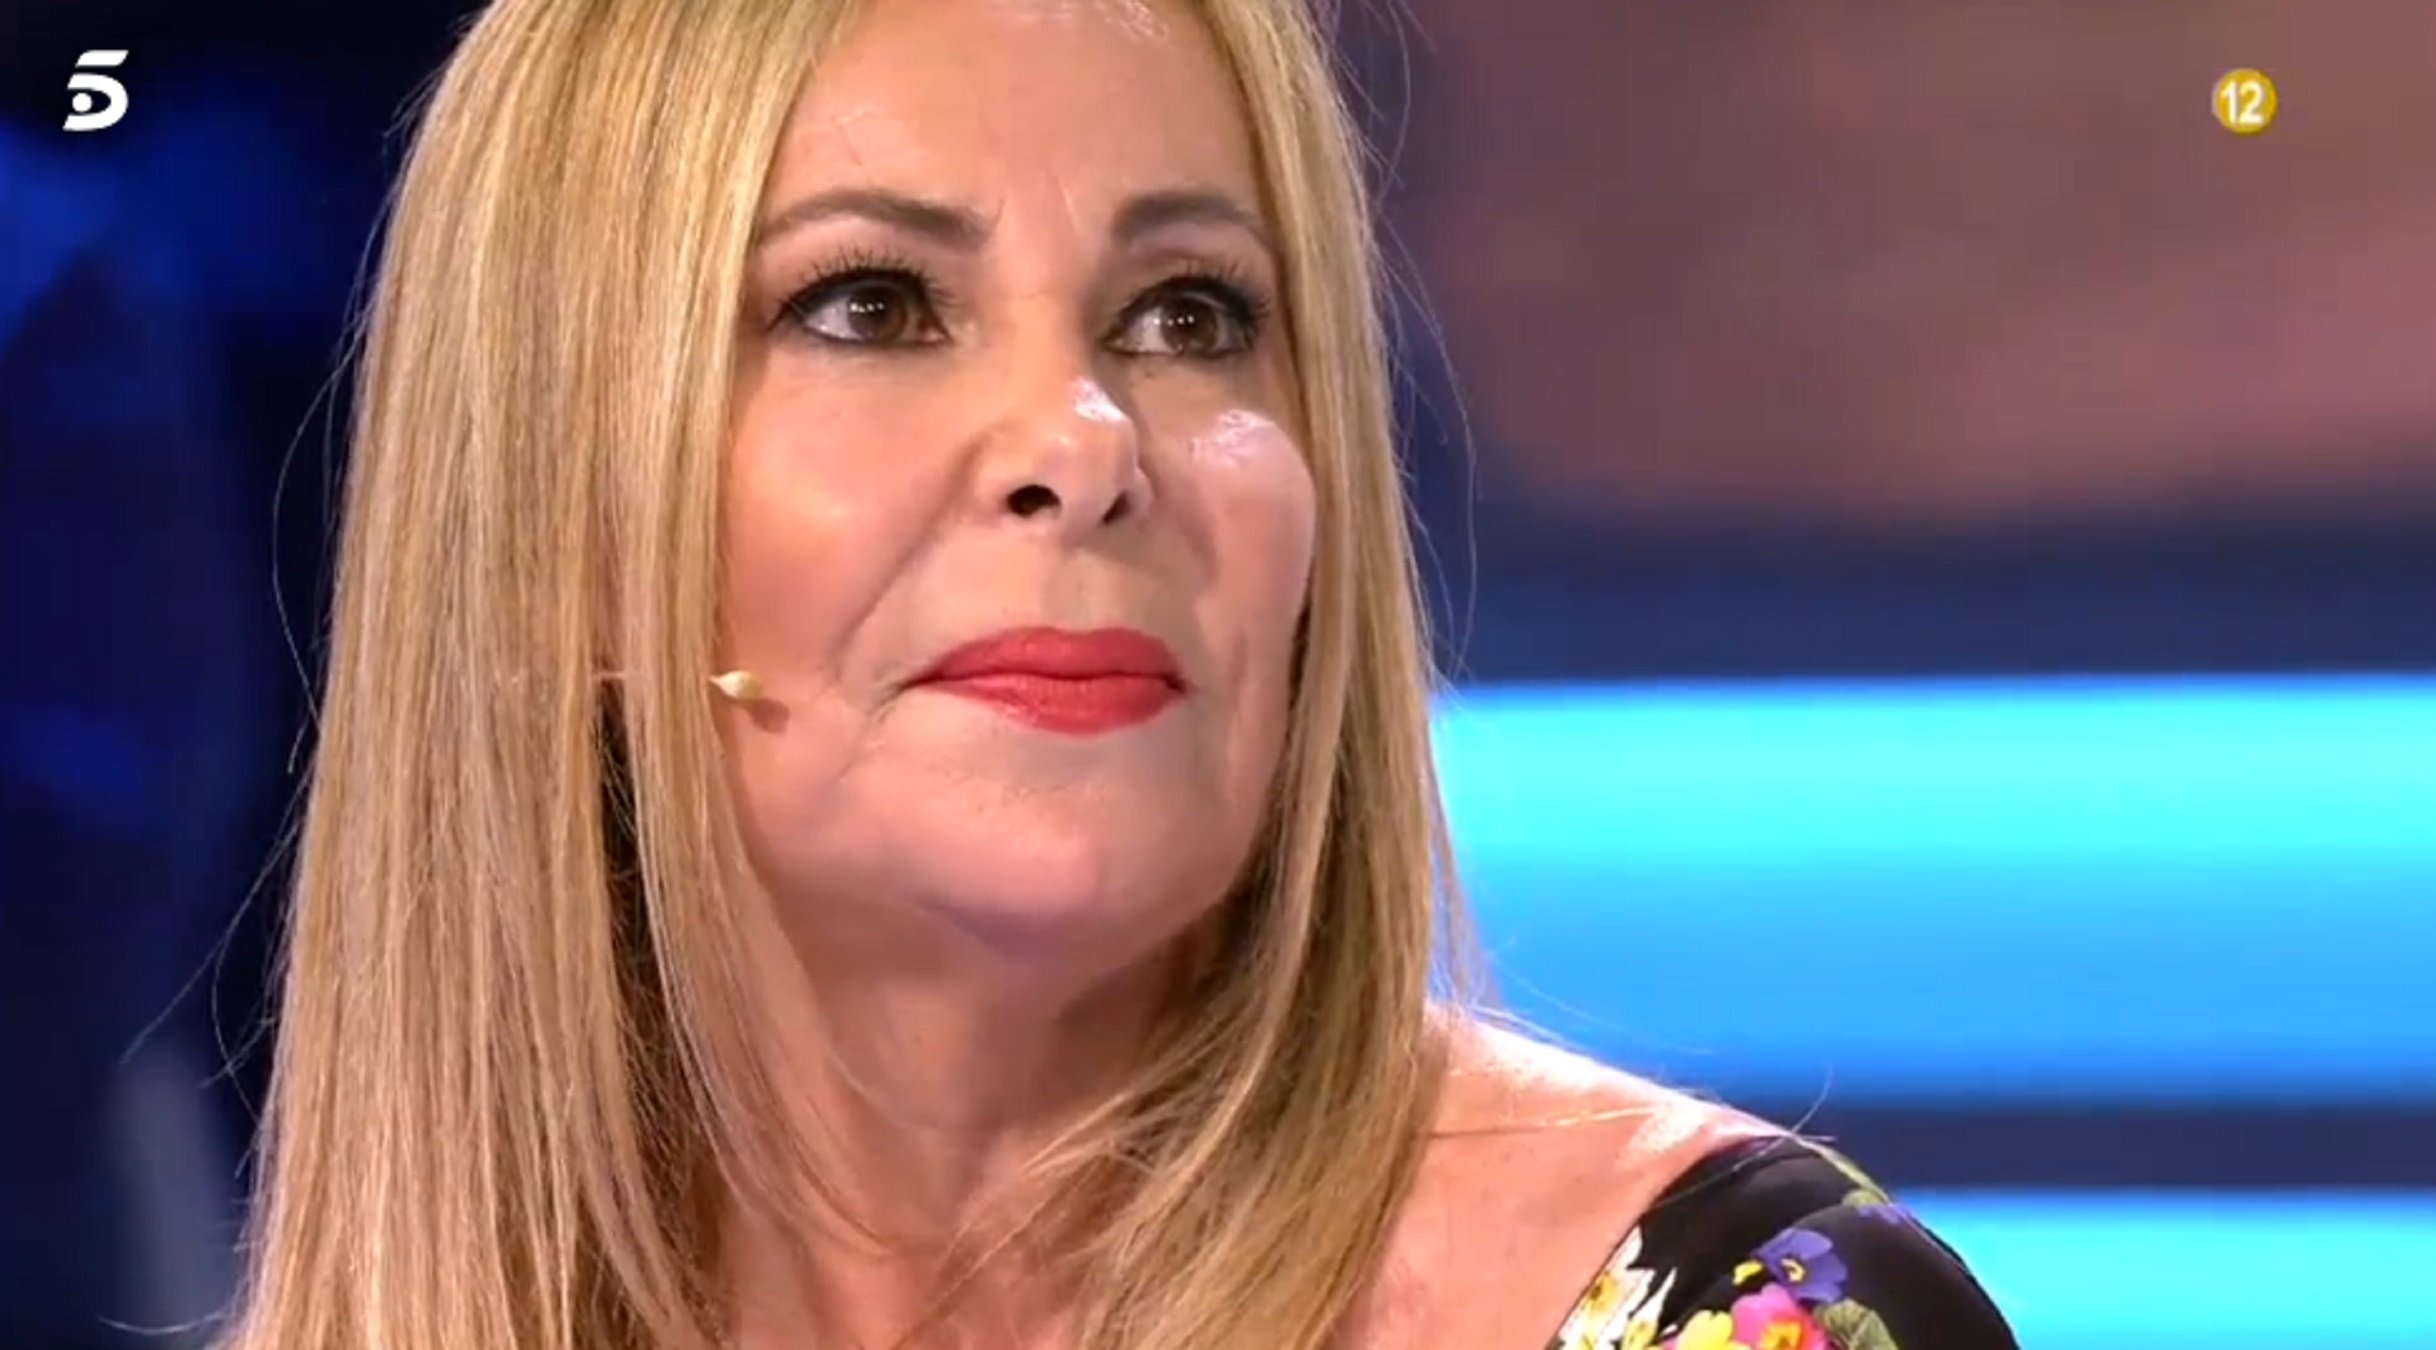 Ana Obregón commou parlant del fill en el retorn a la TV: "Mamá, ¿me voy a morir?"